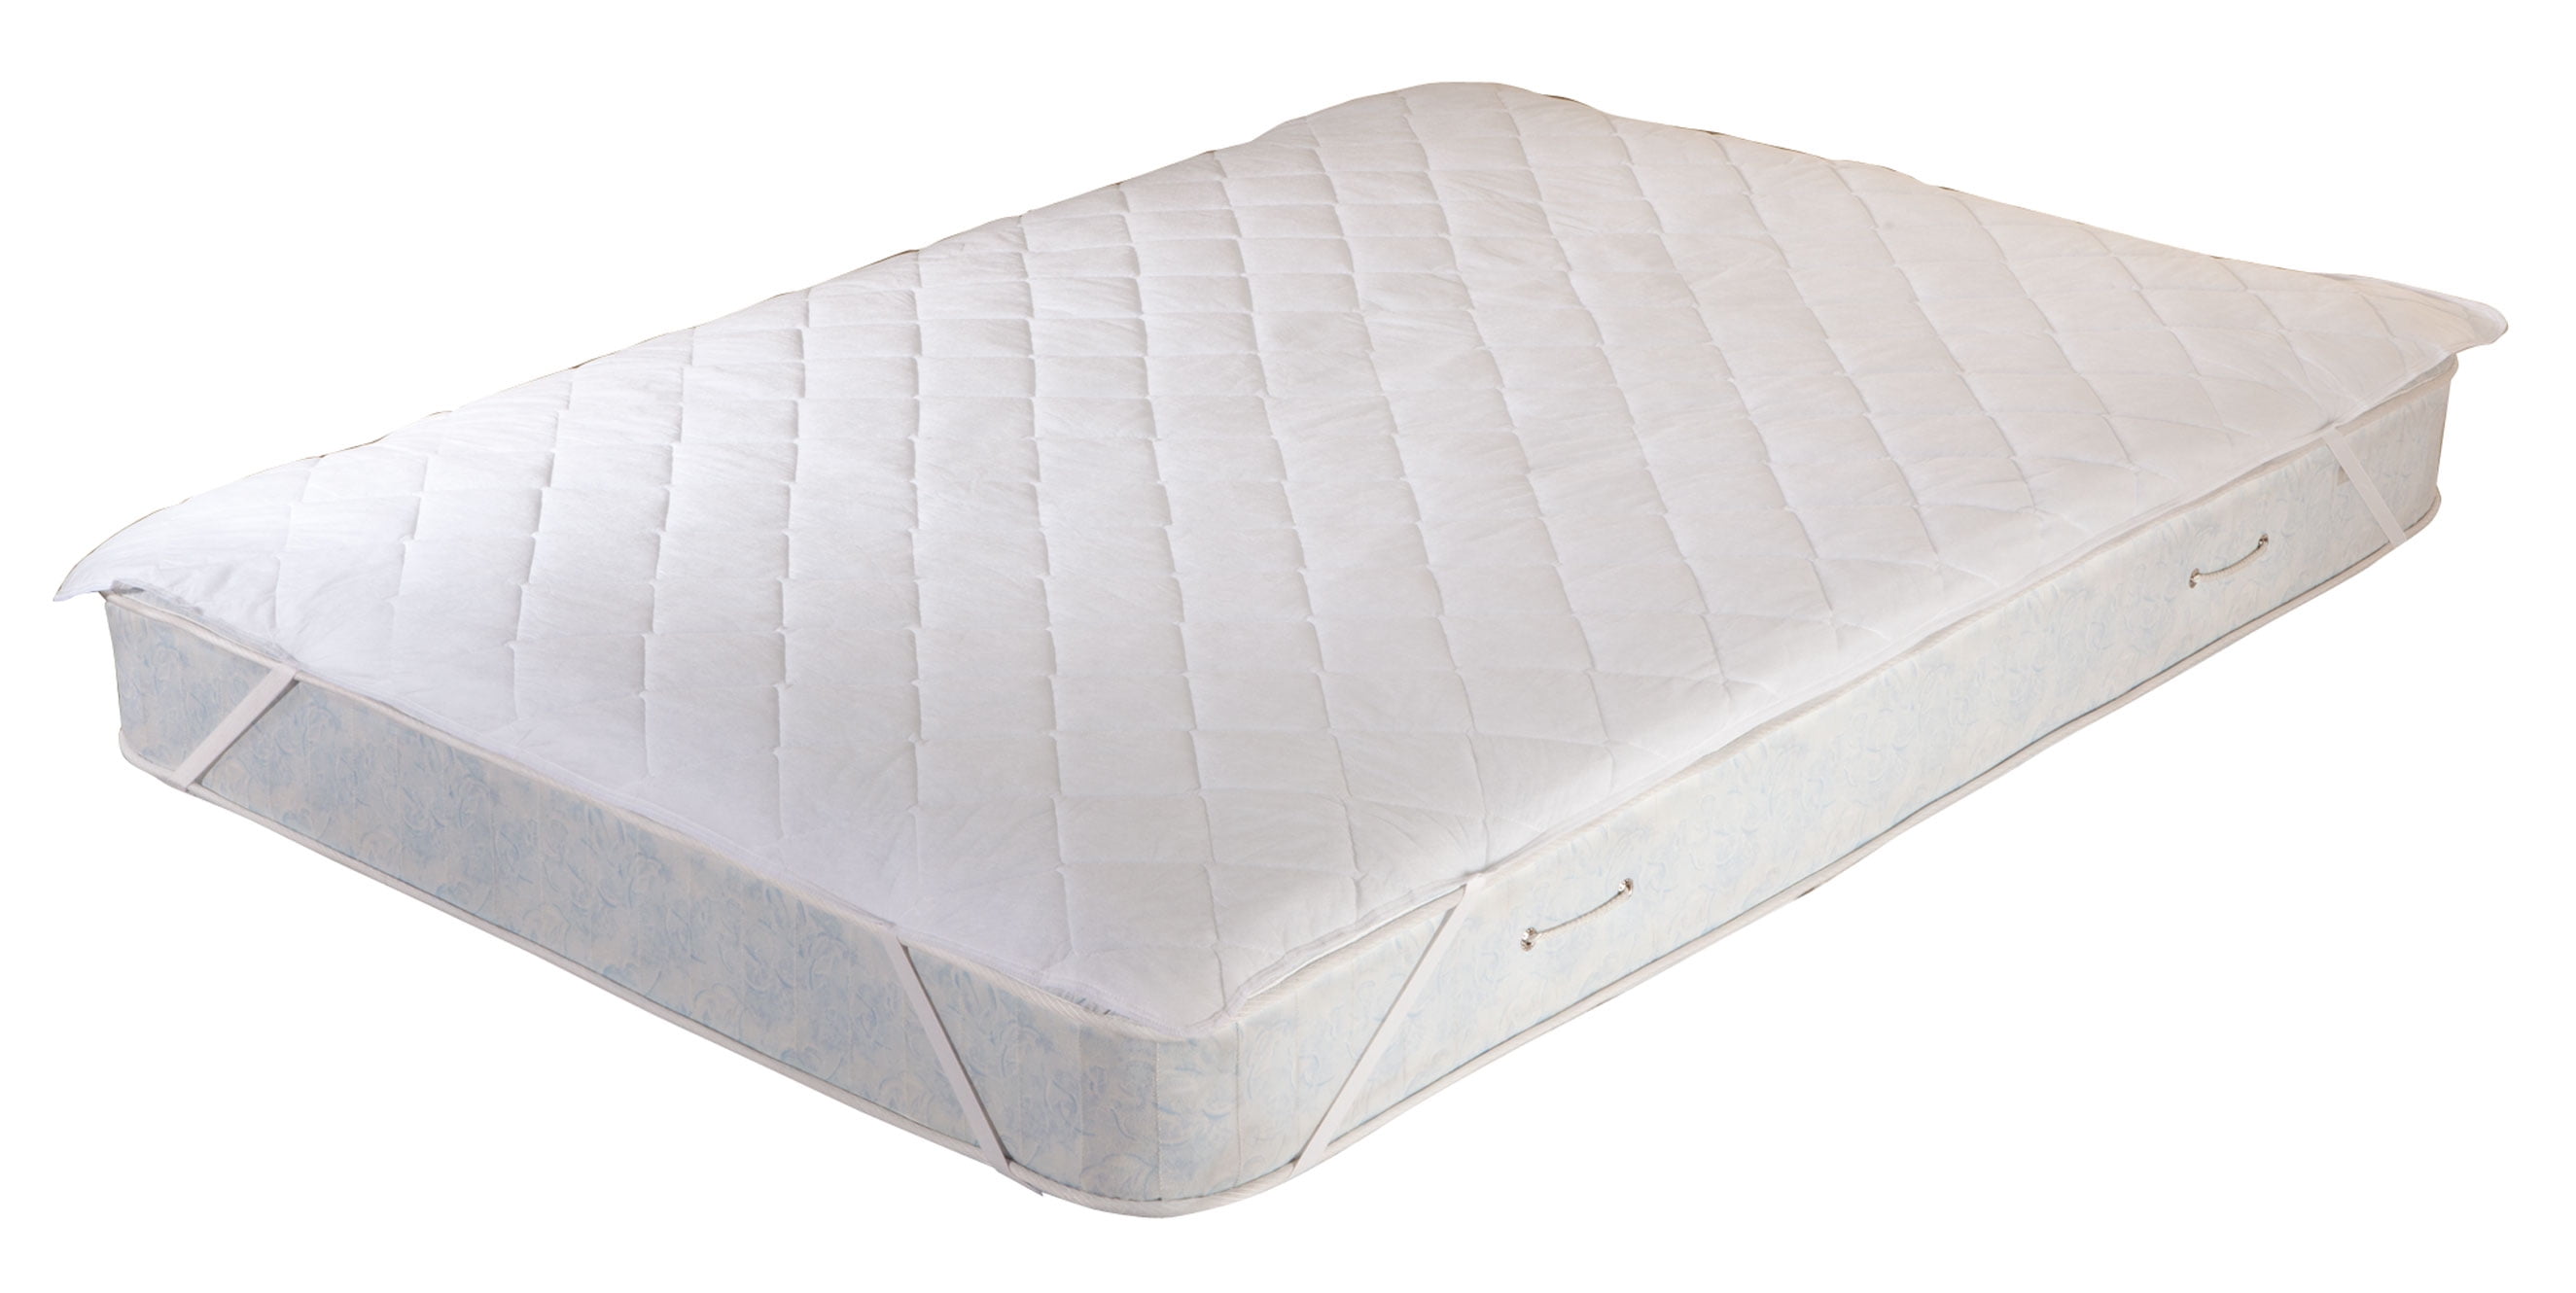 waterproof hypoallergenic mattress pad